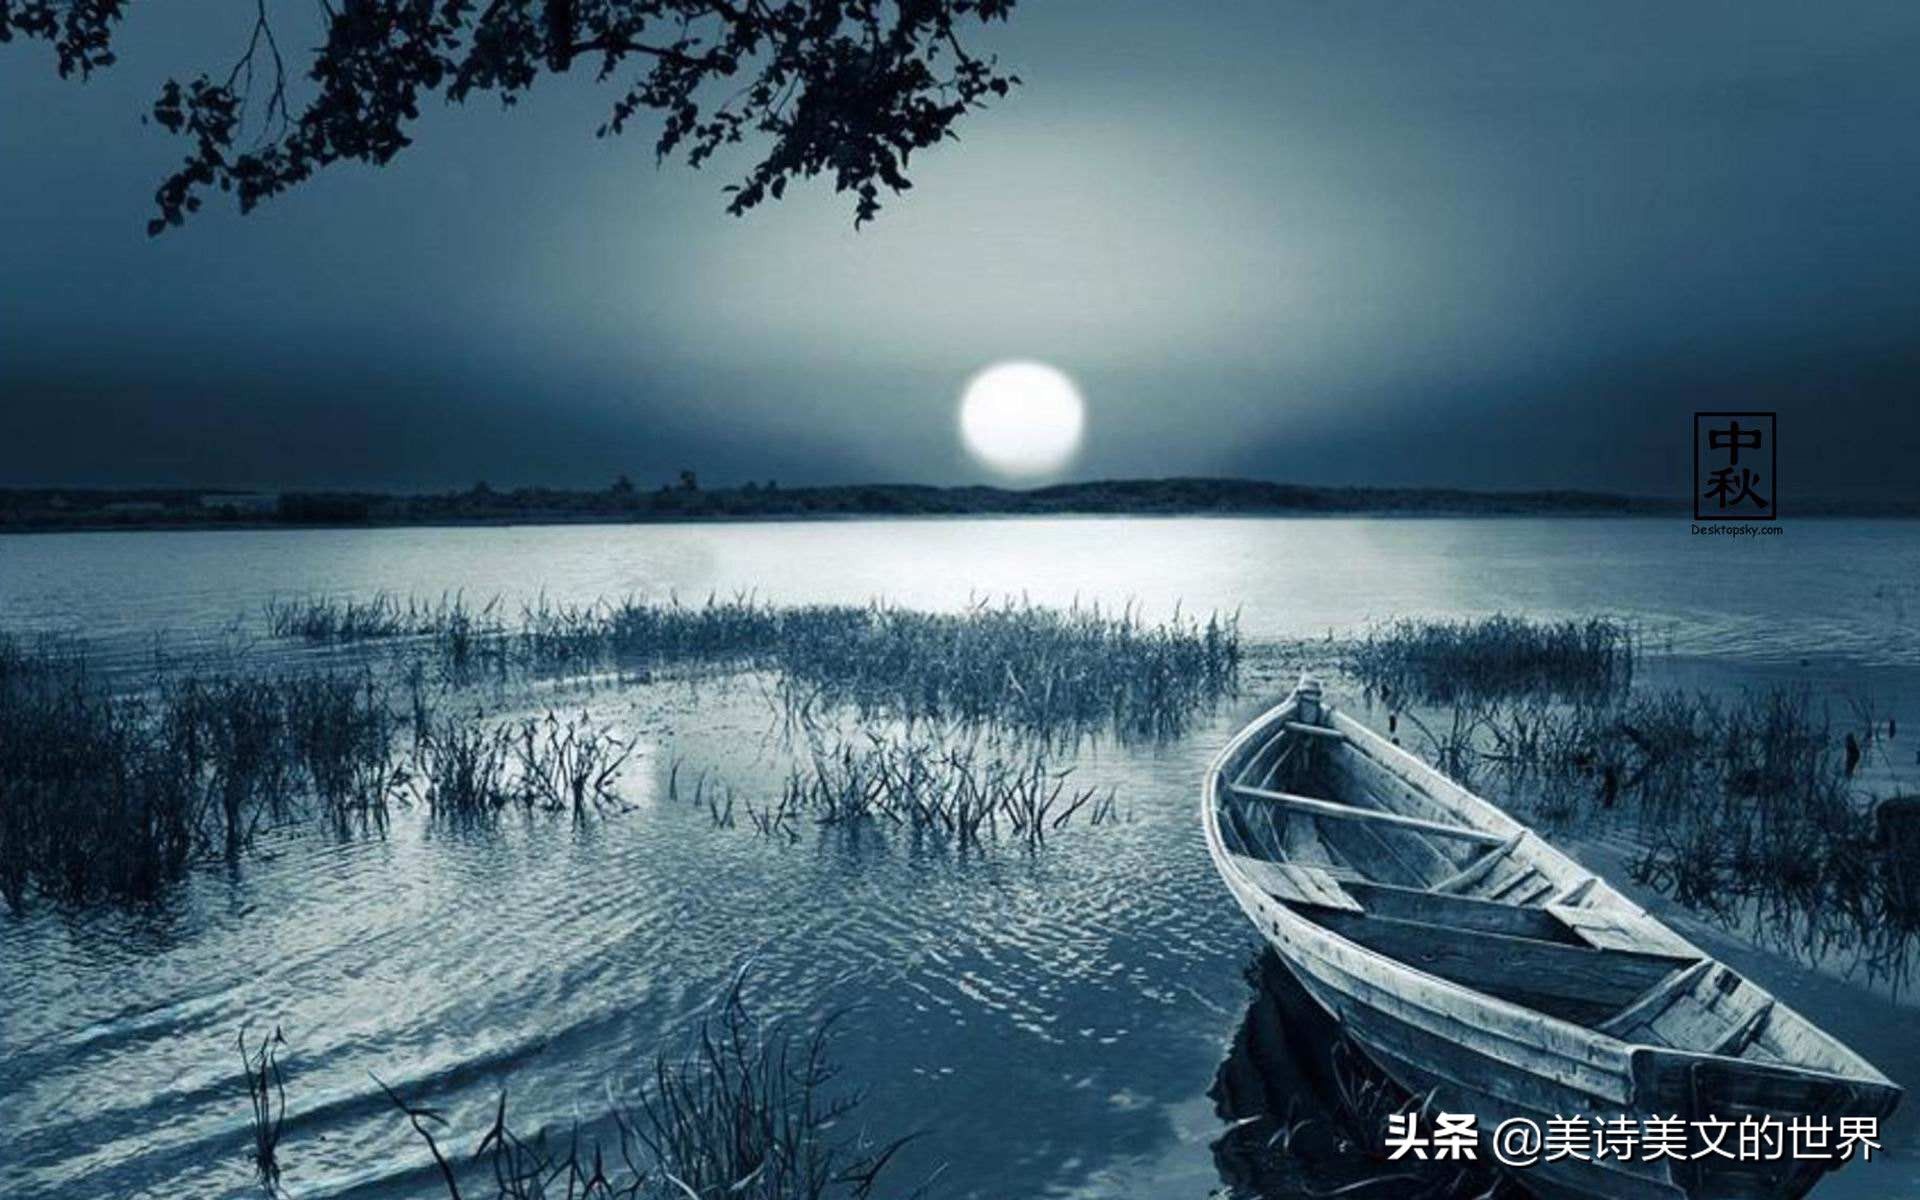 柳宗元共写了140多首诗，只有这一首可以媲美《江雪》，惊艳千年